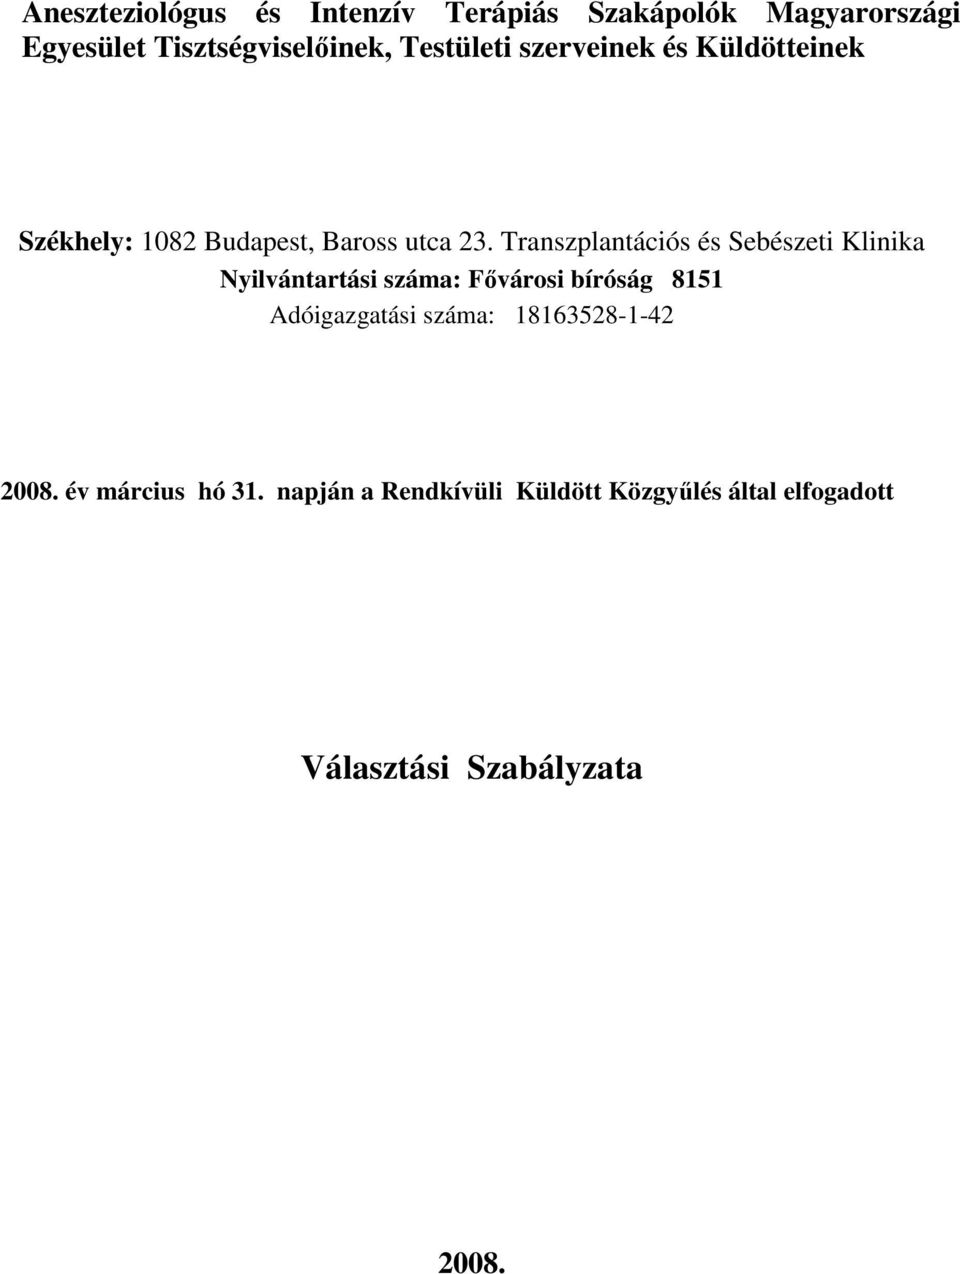 Transzplantációs és Sebészeti Klinika Nyilvántartási száma: Fıvárosi bíróság 8151 Adóigazgatási